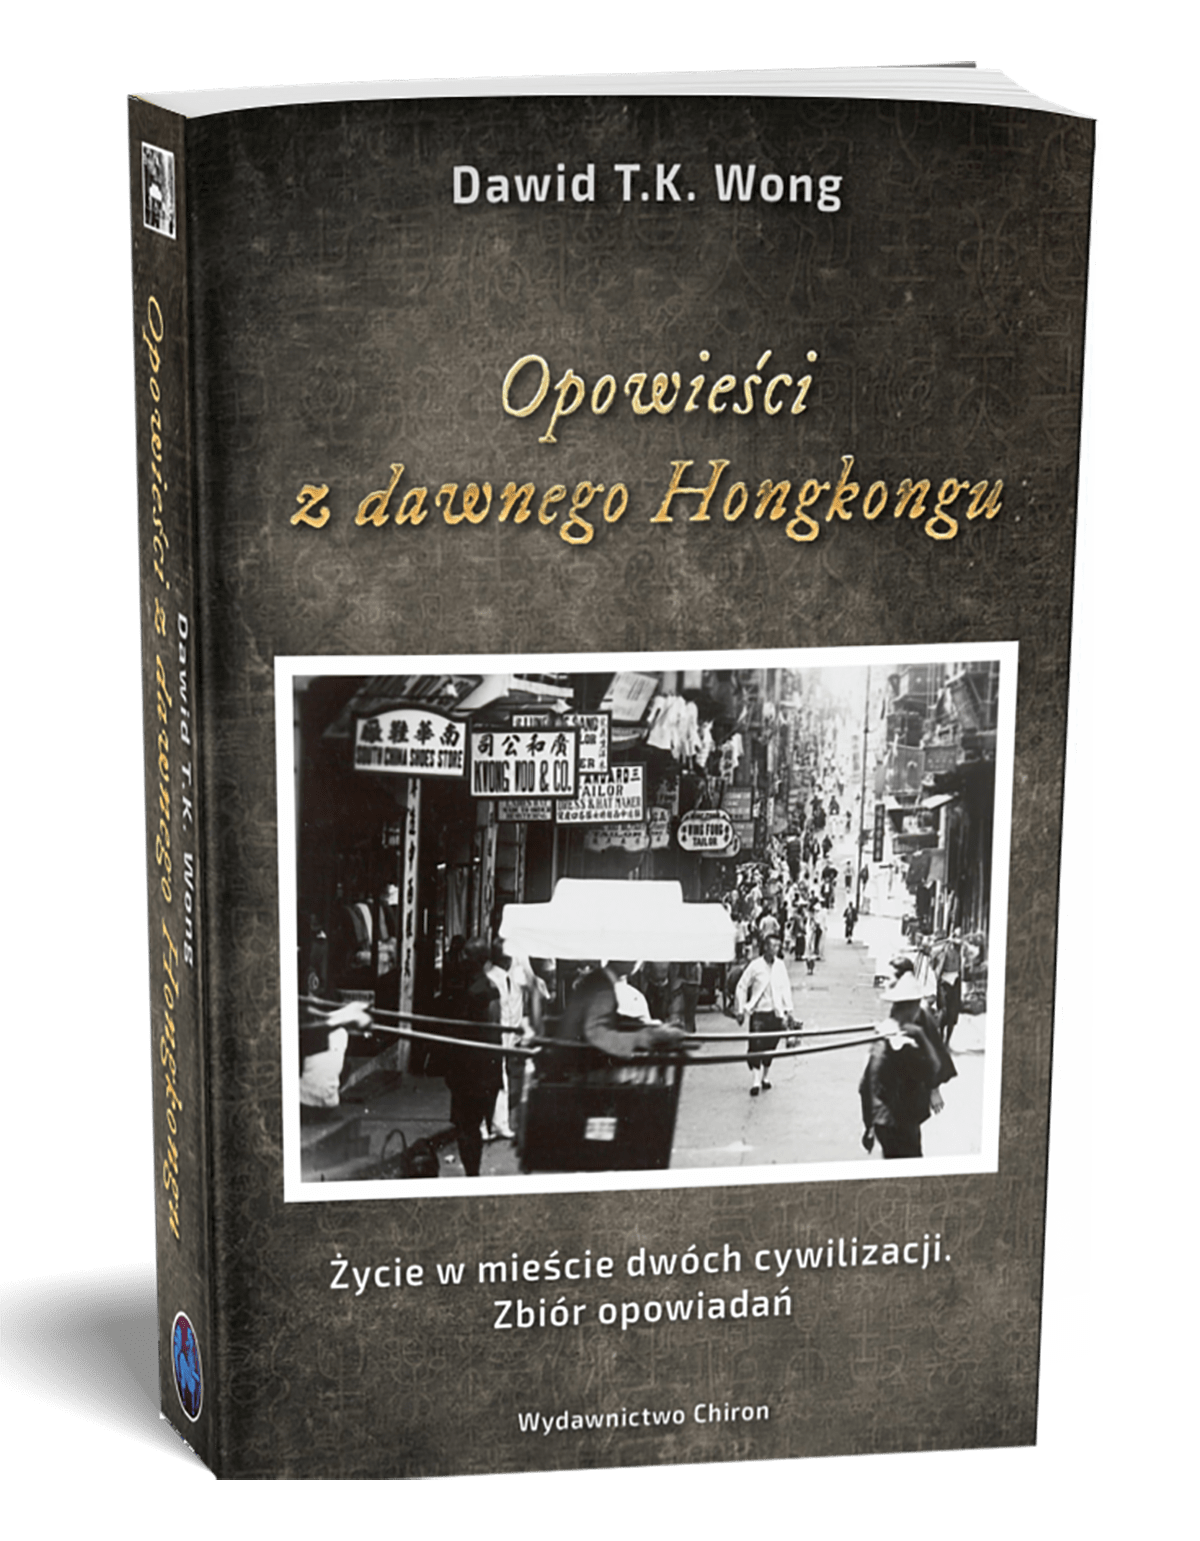 Książka Piotr Plebaniak, Opowieści z dawnego Hongkongu, gdzie kupić - lista księgarni (poniżej)